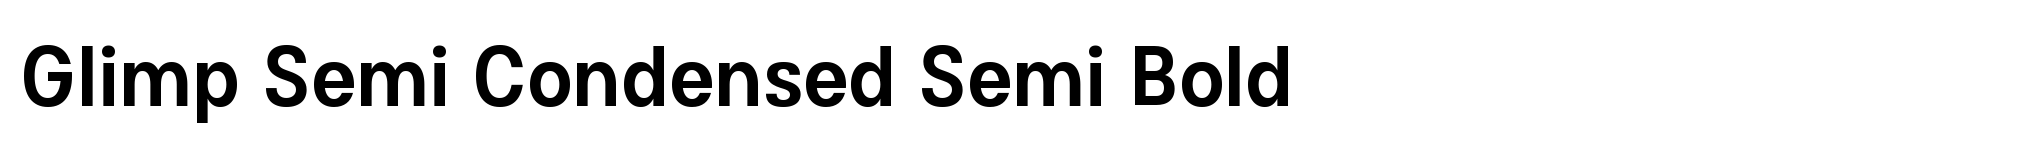 Glimp Semi Condensed Semi Bold image